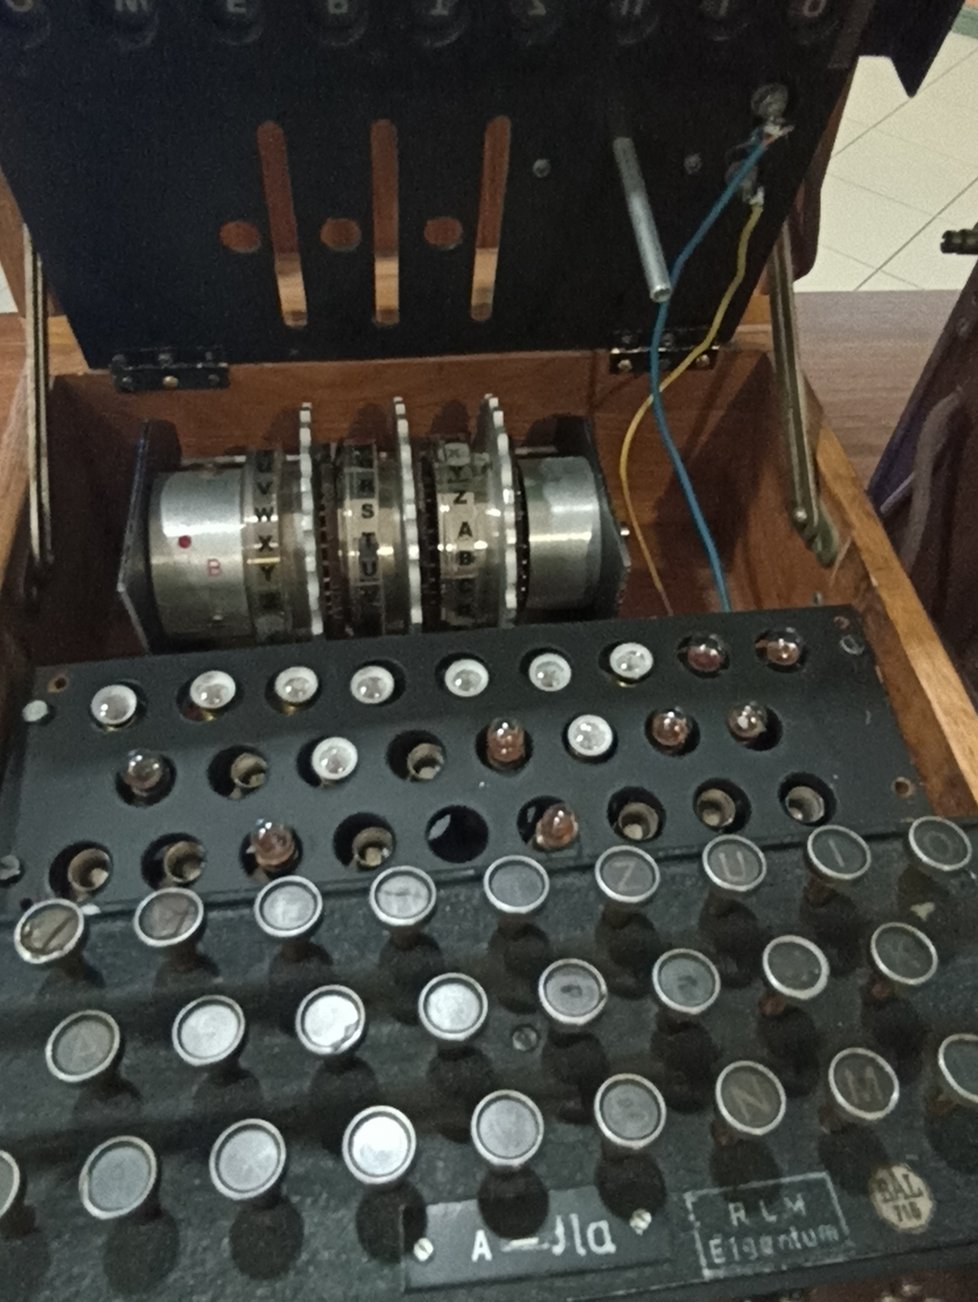 Přístroje Enigma sloužily k šifrování komunikace mezi německými jednotkami a velením. Používala je i tajná služba Abwehr.